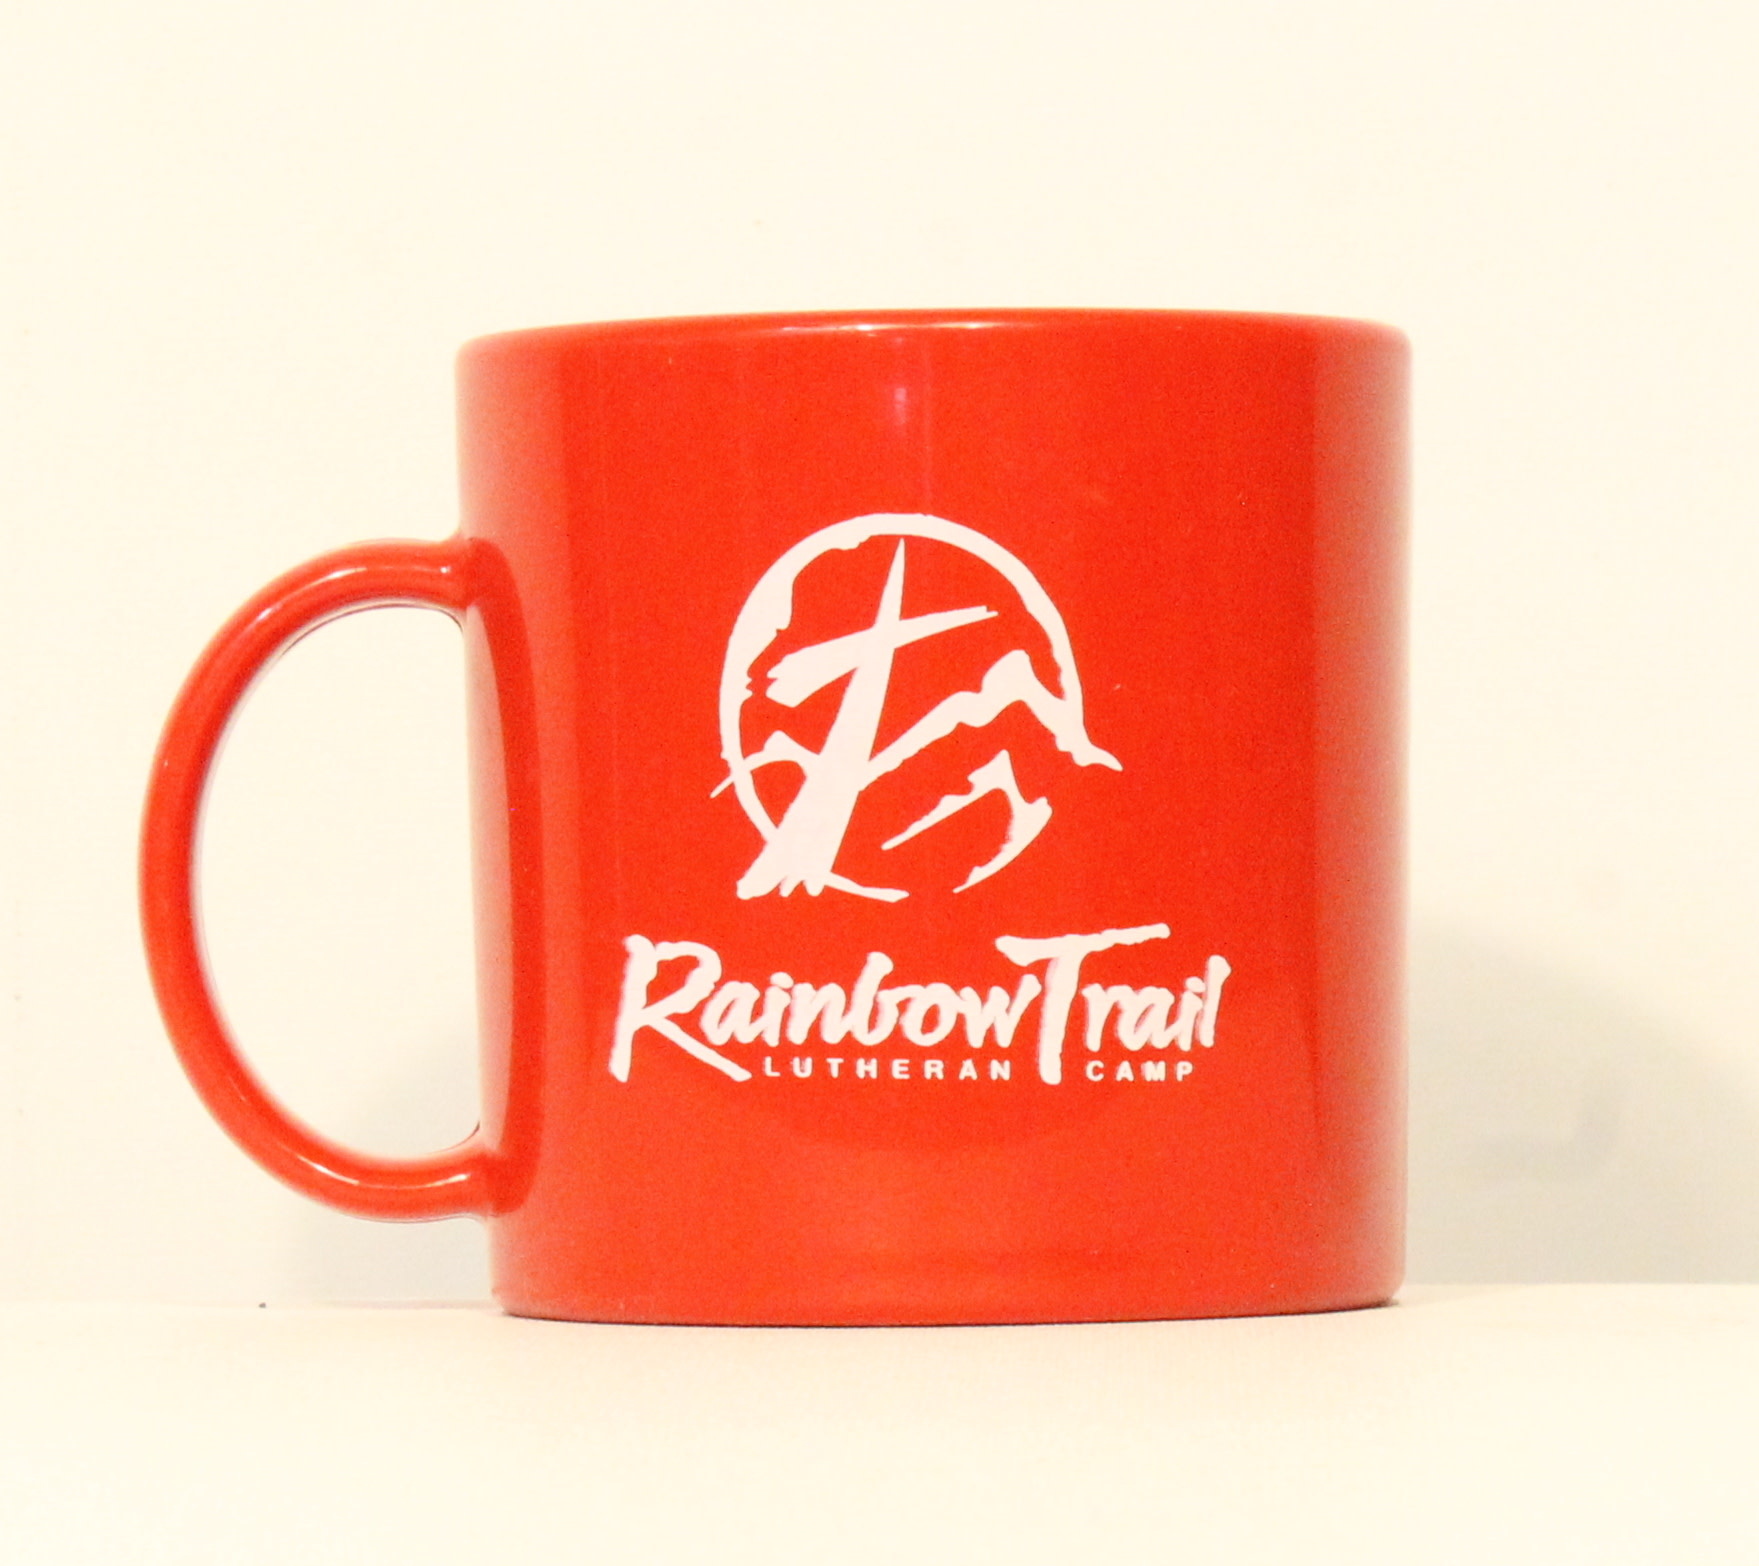 Contigo Travel Mug - Rainbow Trail Lutheran Camp Pop Shop